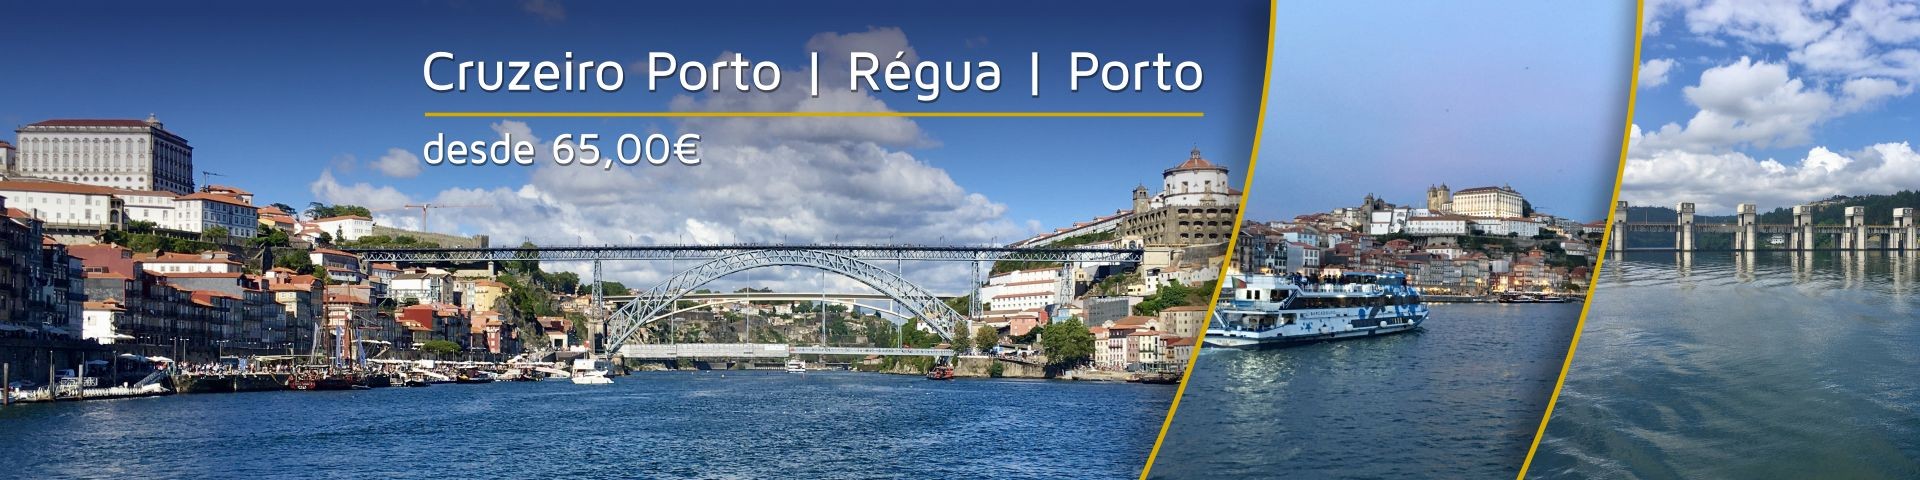 Cruzeiro Porto Régua Porto